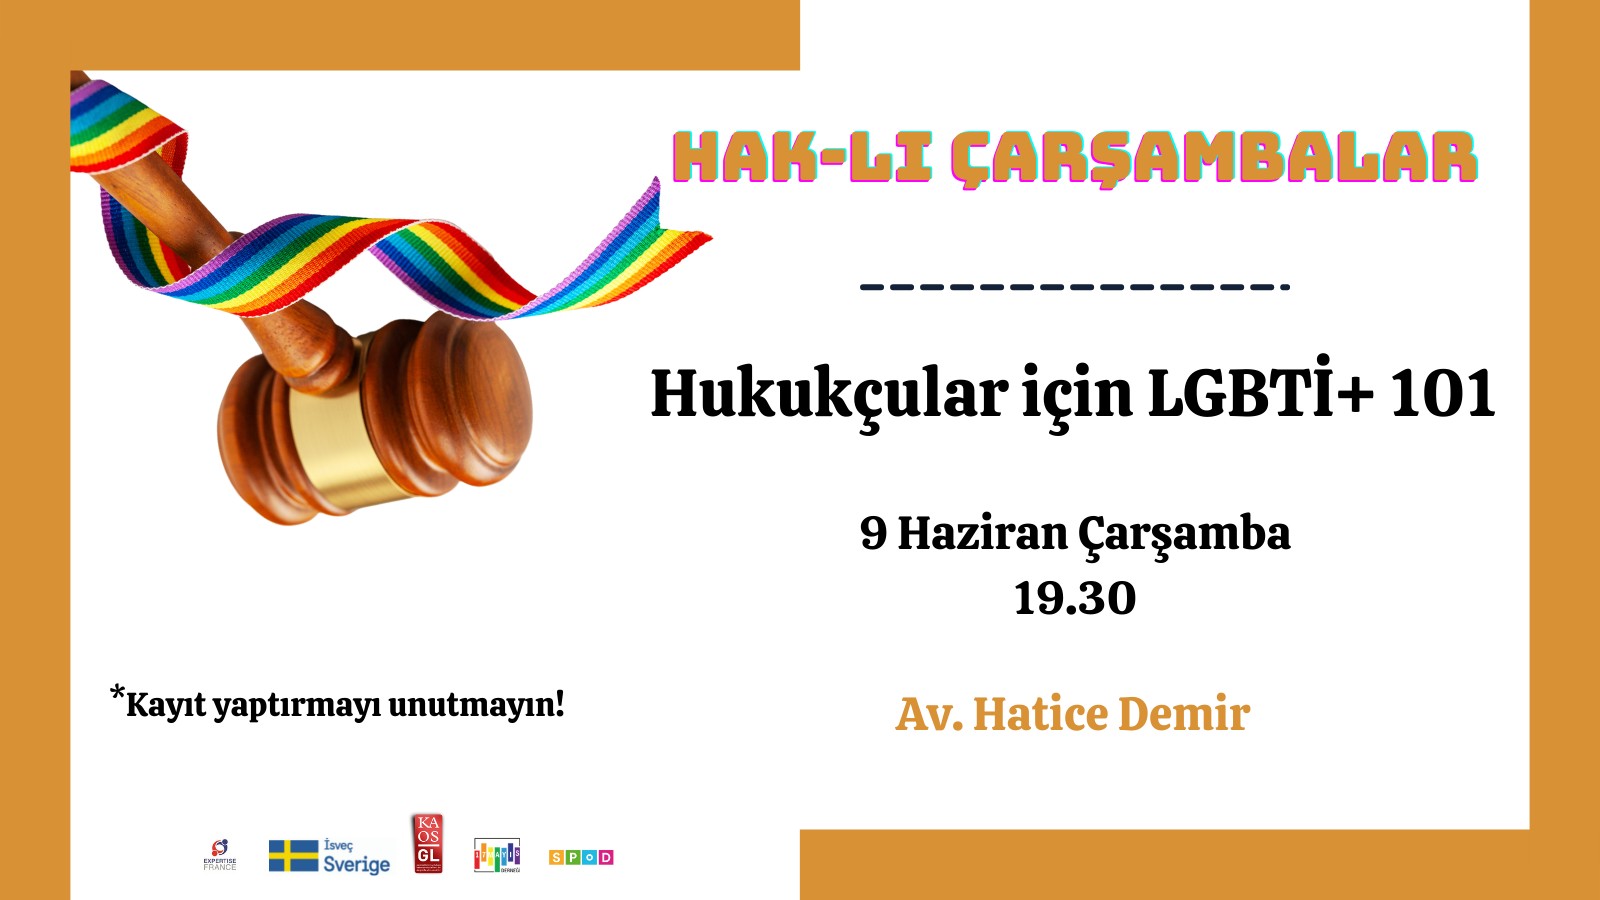 Hak-lı Çarşambalar: “Hukukçular İçin LGBTİ+ 101” etkinliği 9 Haziran’da! Kaos GL - LGBTİ+ Haber Portalı